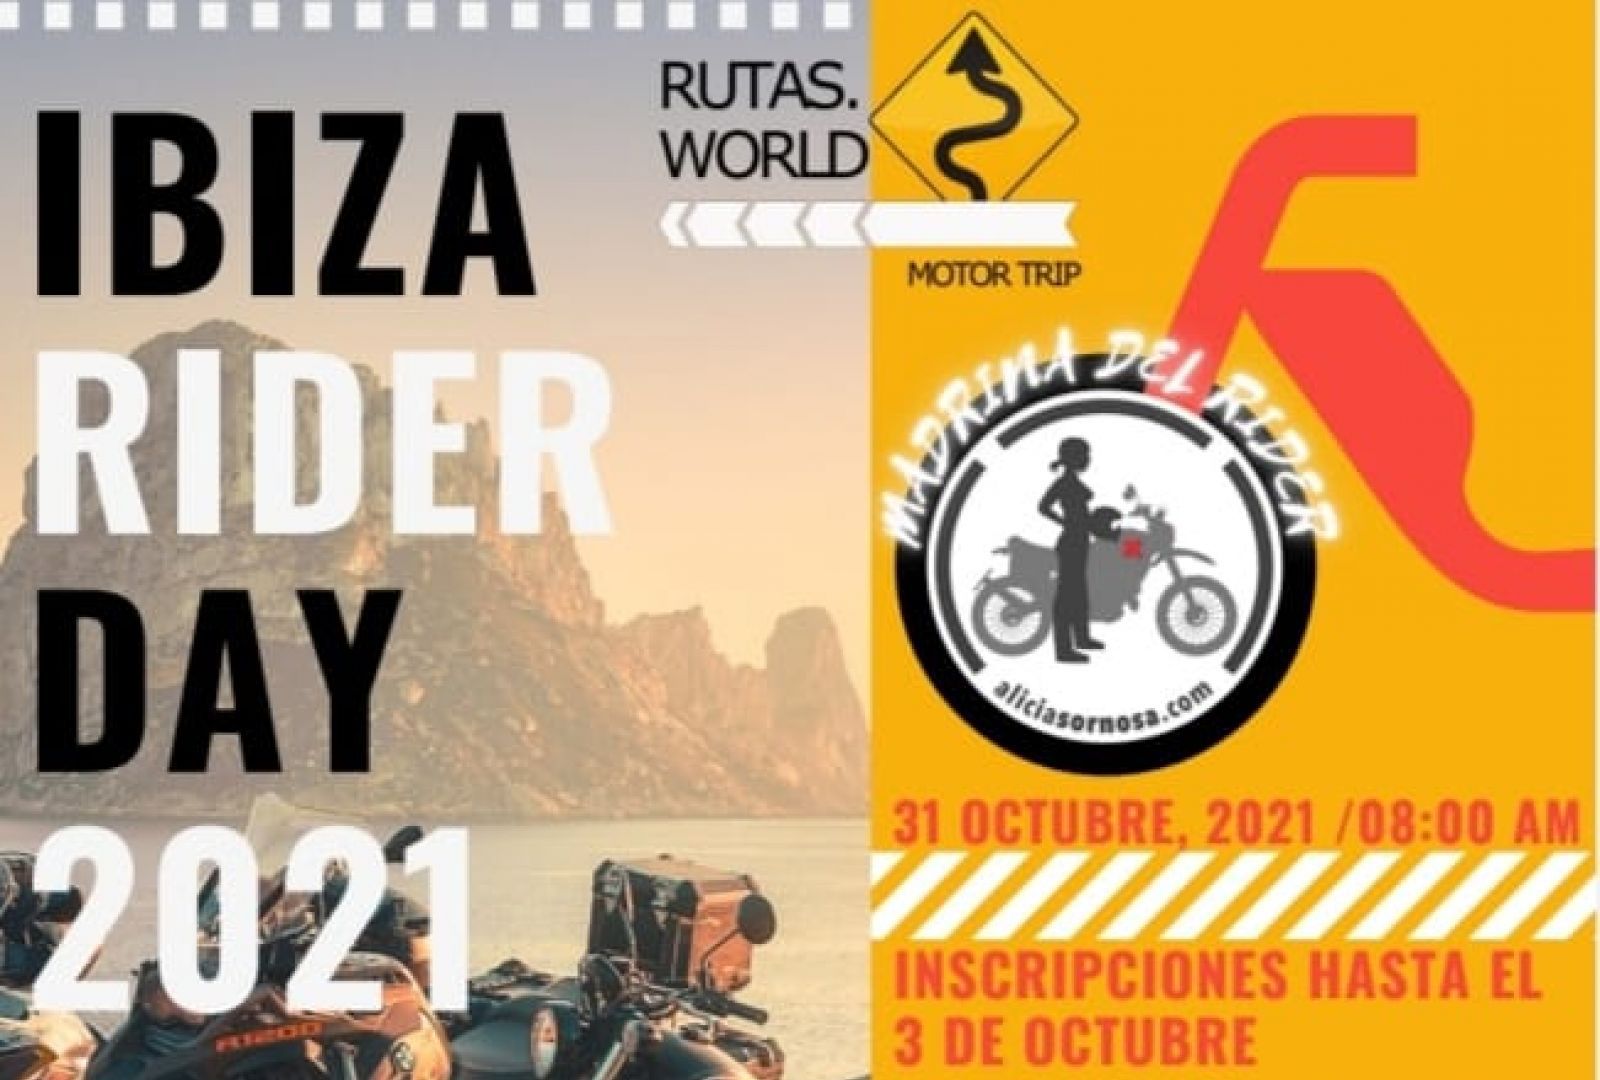 Presentada la I edición del encuentro de motoristas Ibiza Rider Day que espera reunir a 300 moteros